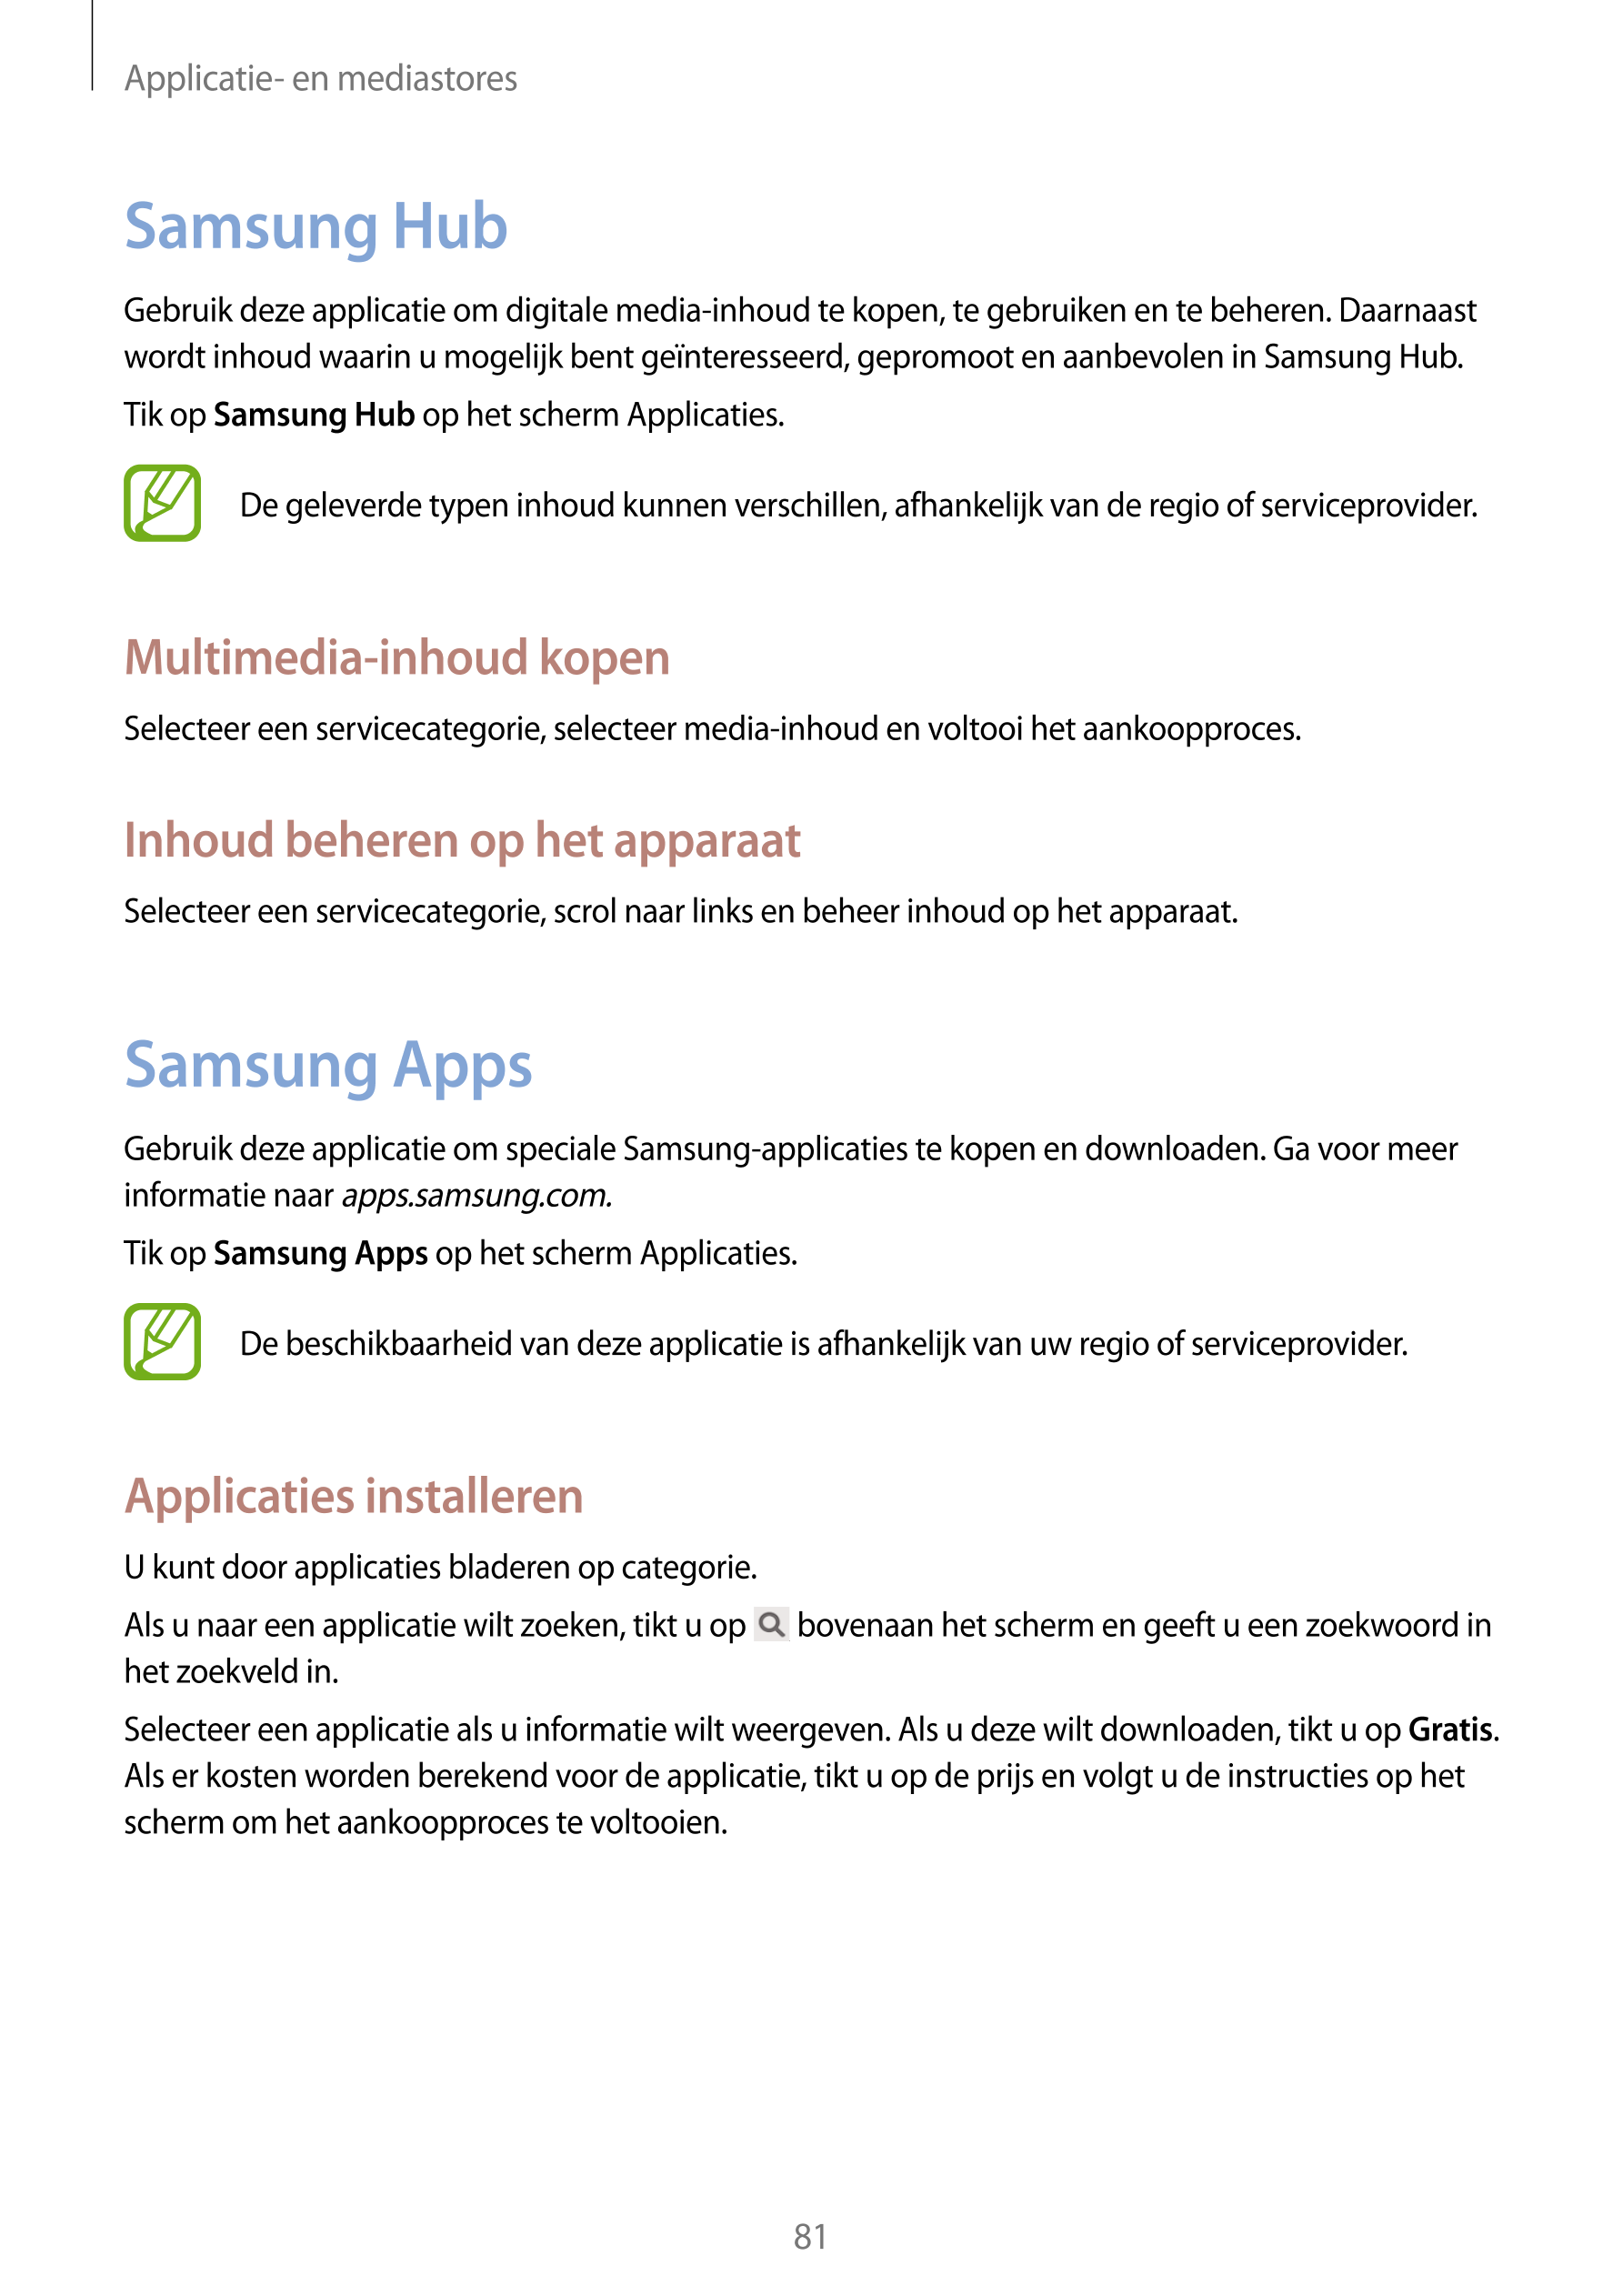 Applicatie- en mediastores
Samsung Hub
Gebruik deze applicatie om digitale media-inhoud te kopen, te gebruiken en te beheren. Da